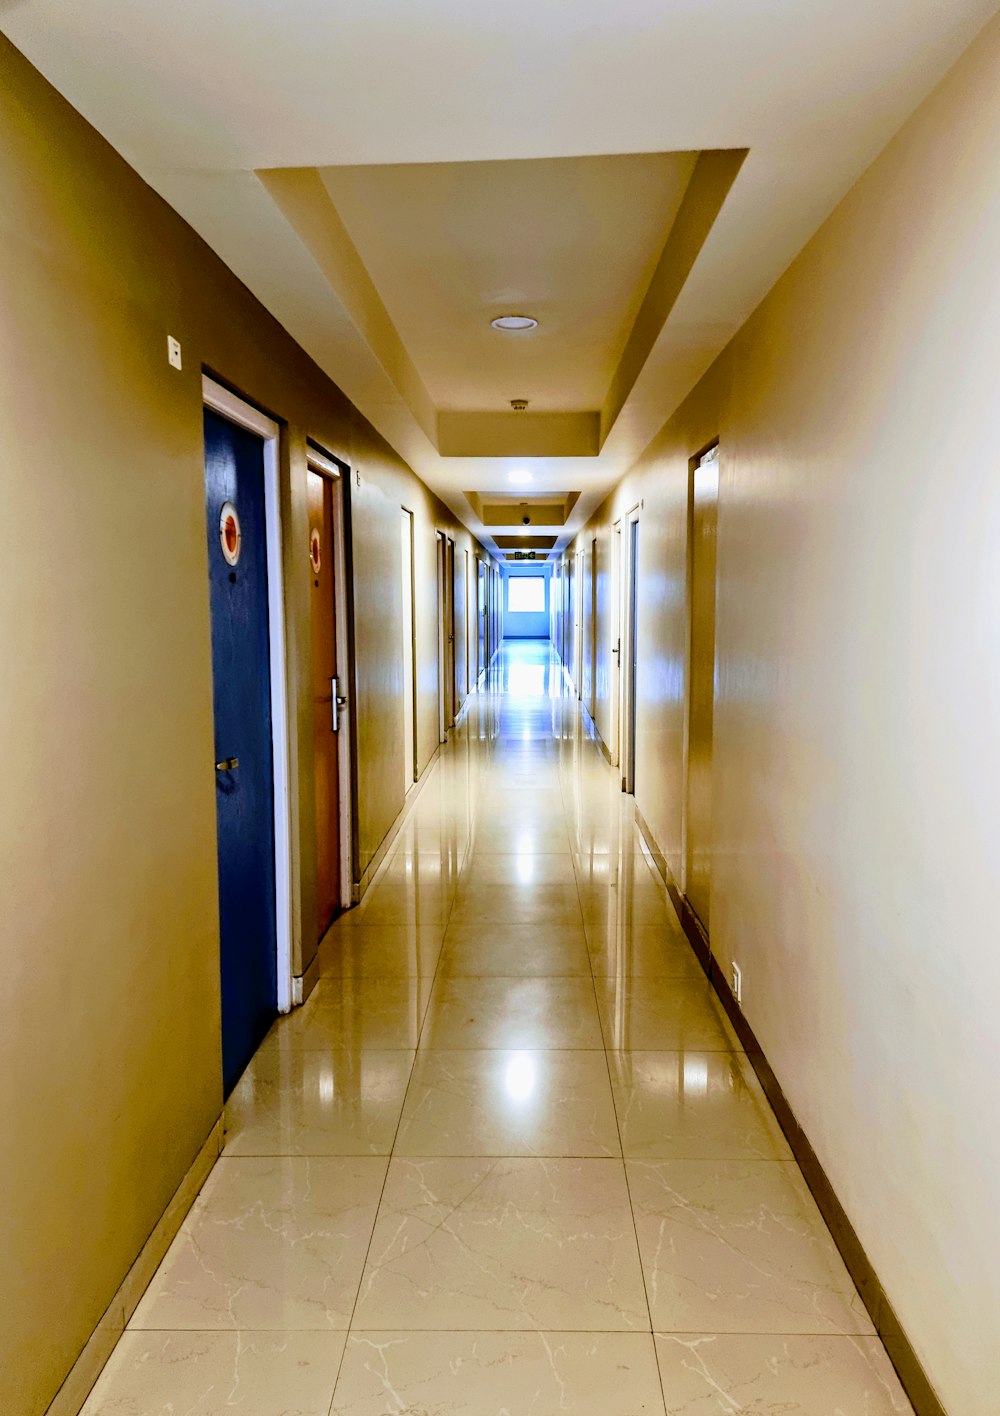 hallway with green doors and doors